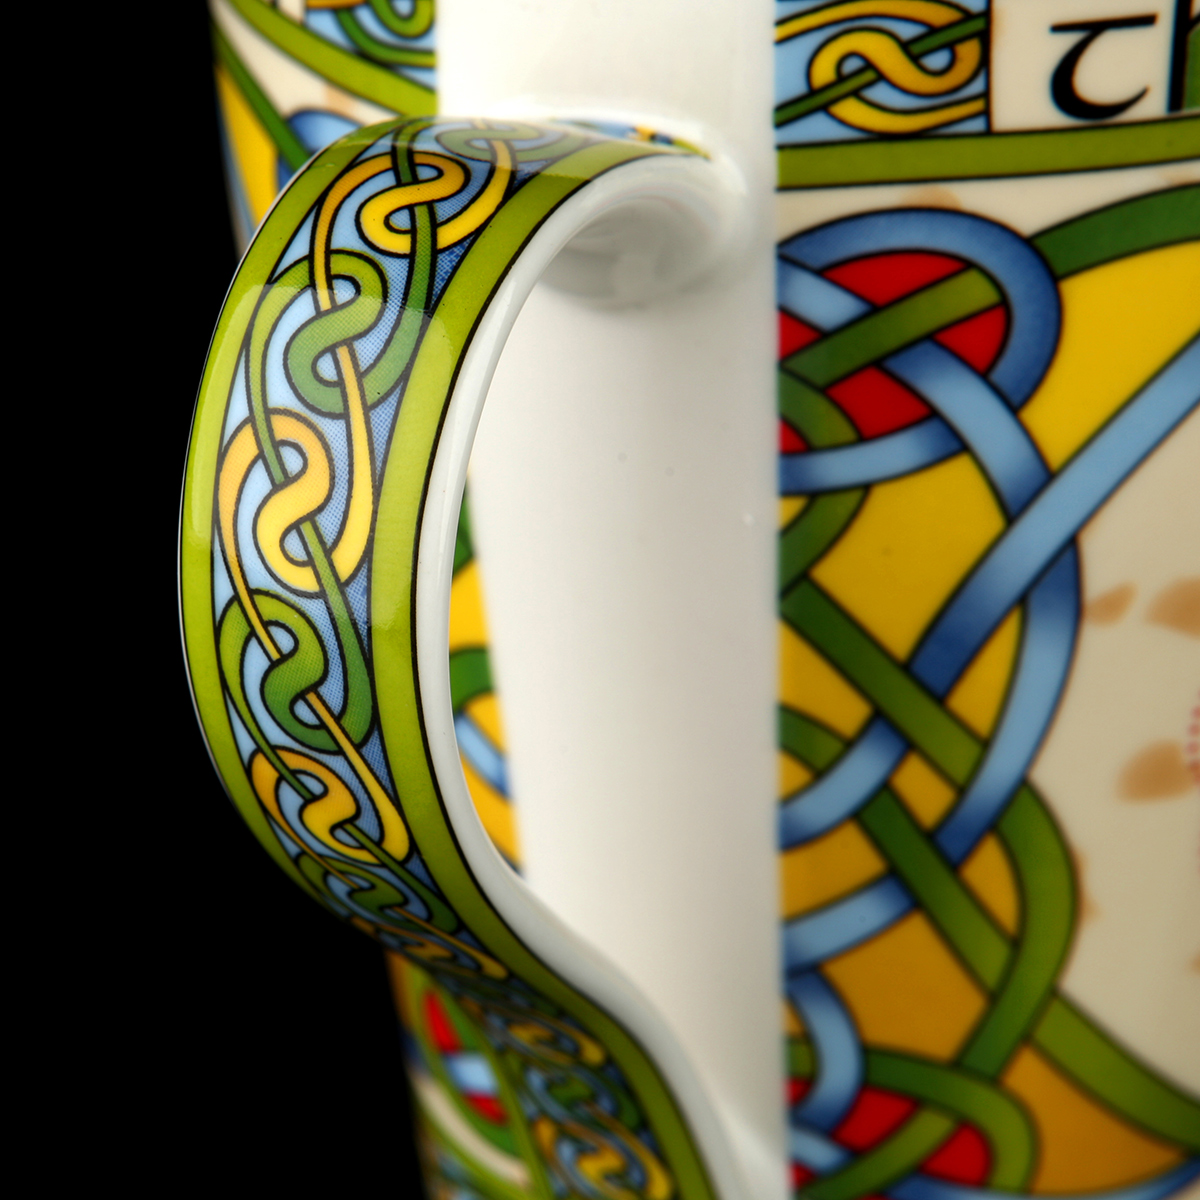 Irish Shamrock Mug - Kaffeebecher mit irischem Kleeblatt und keltischen Mustern